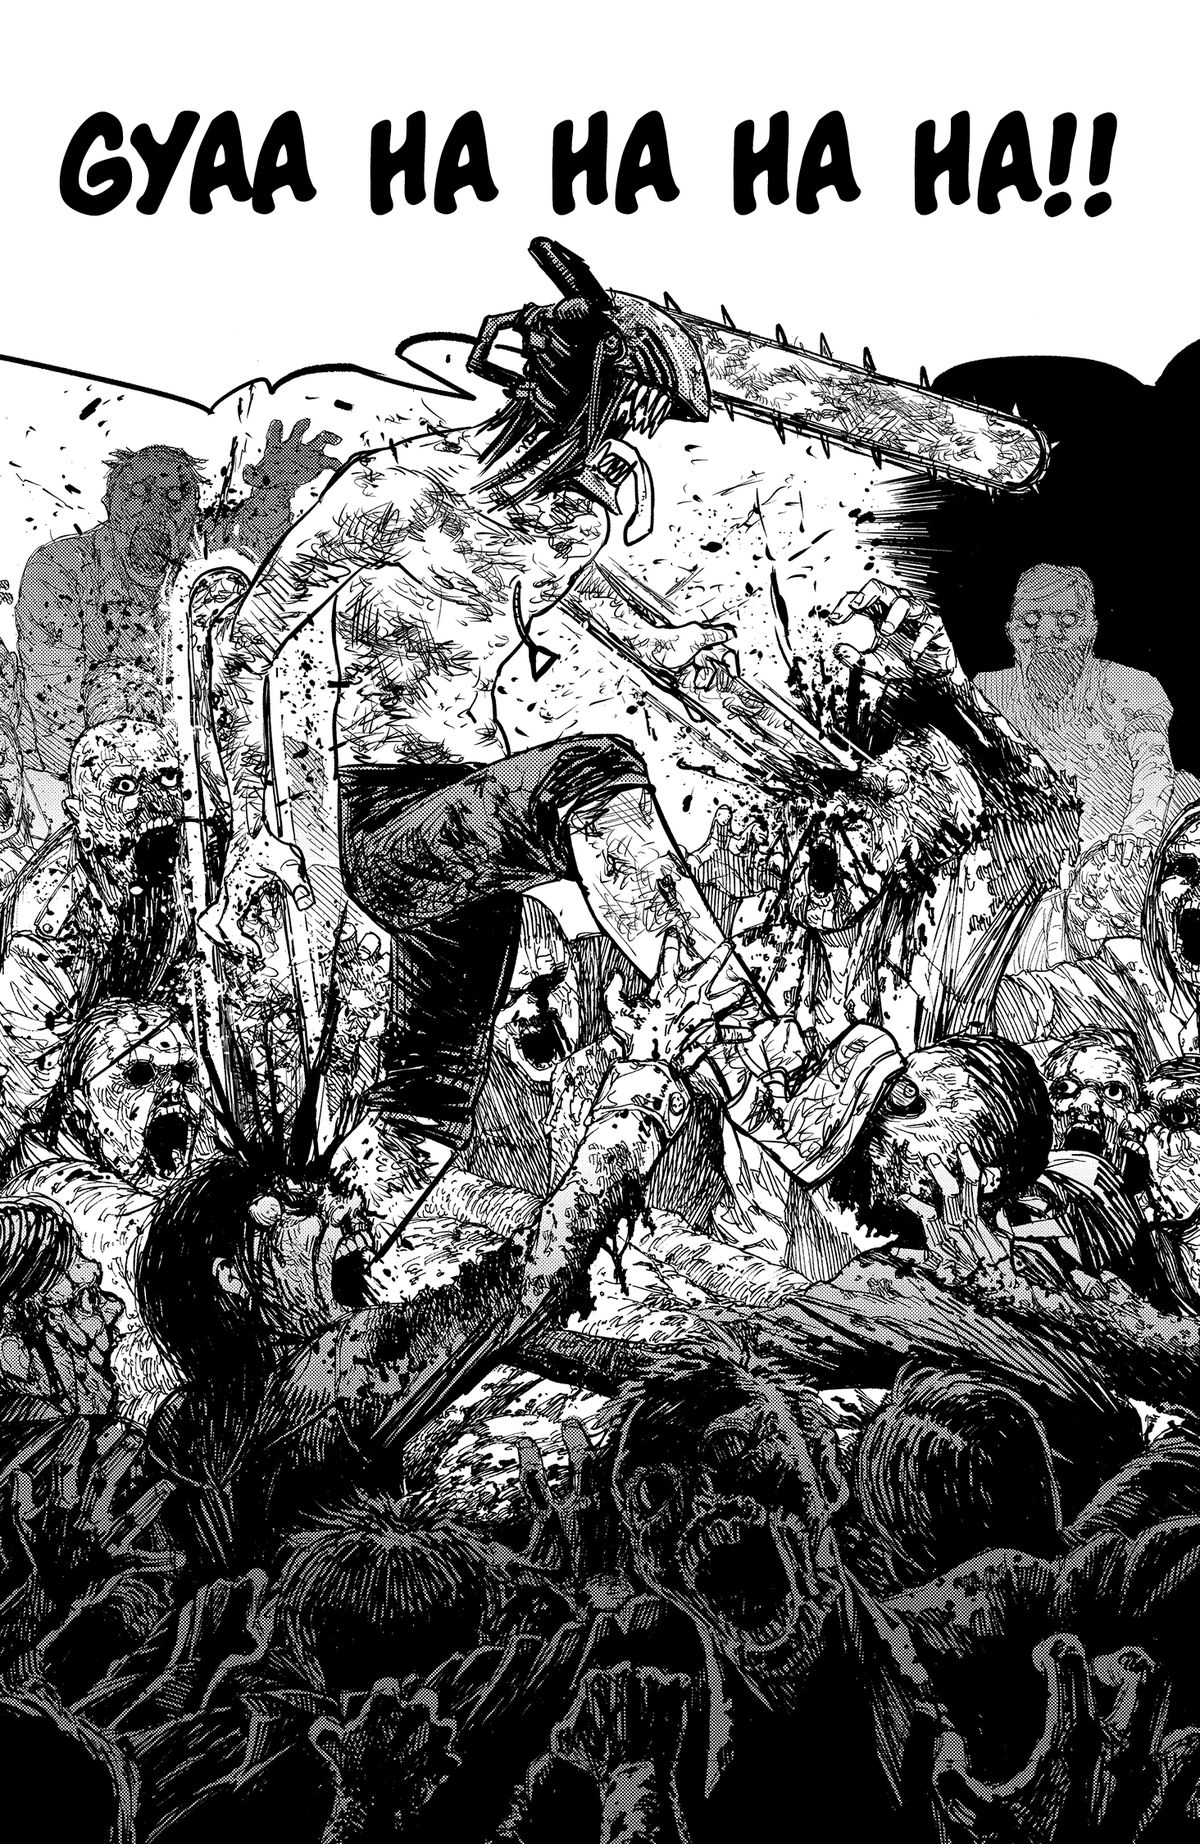 Denji, un uomo con una motosega al posto della testa con altre motoseghe attaccate alle braccia, fa a pezzi dozzine di zombi, spruzzando sangue ovunque in Chainsaw Man volume 1.